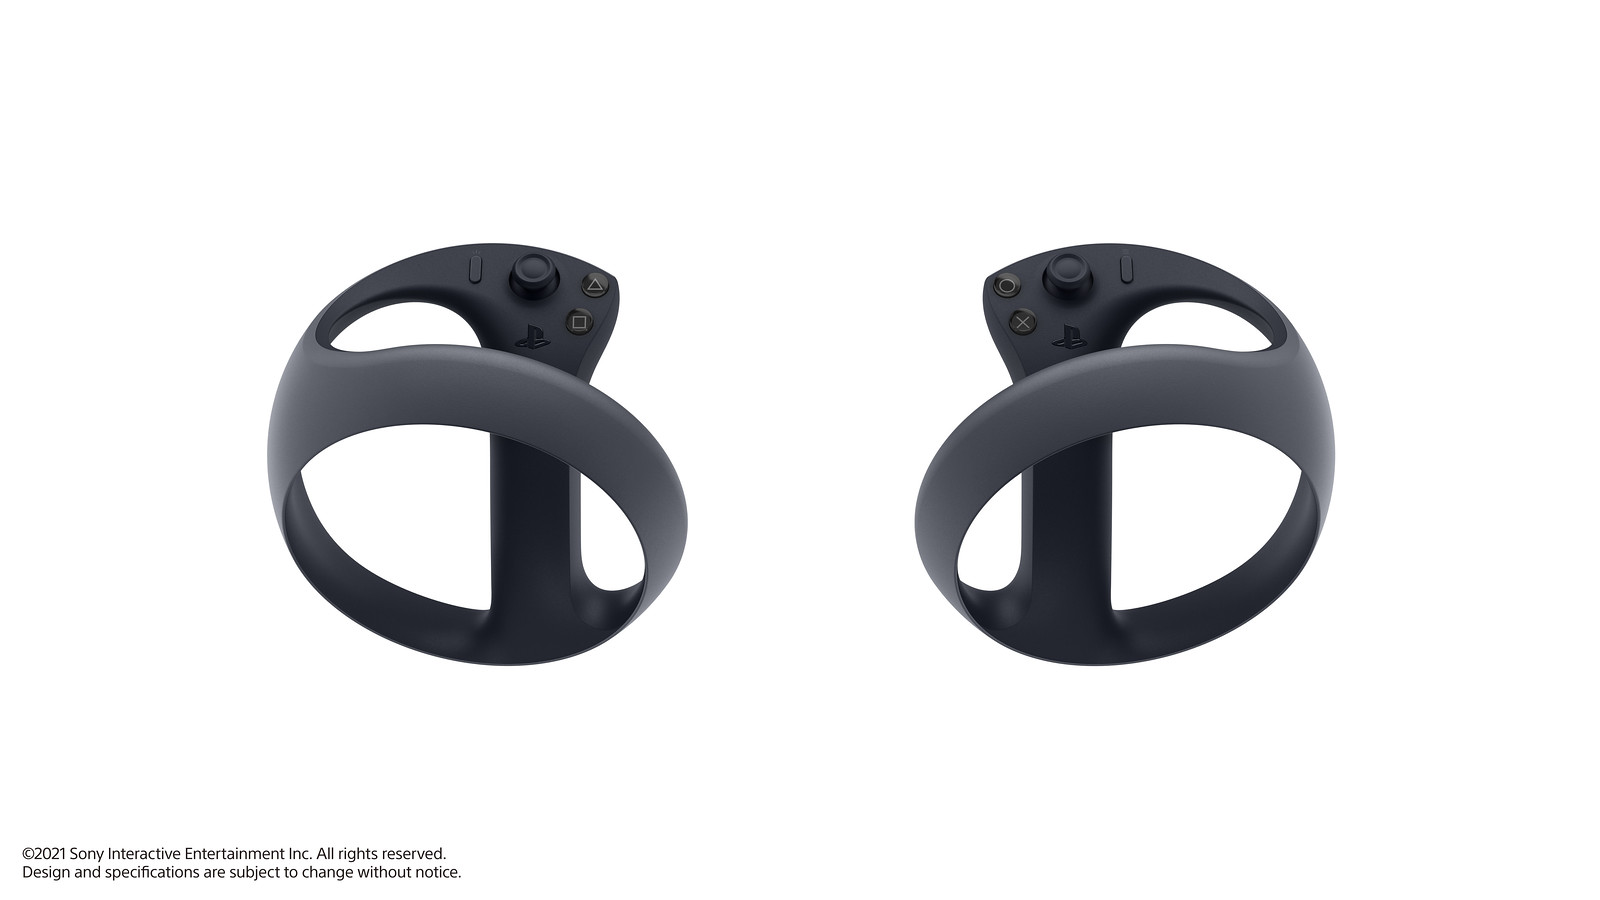 indarbejde nominelt vagt Next-gen VR on PS5: the new controller – PlayStation.Blog